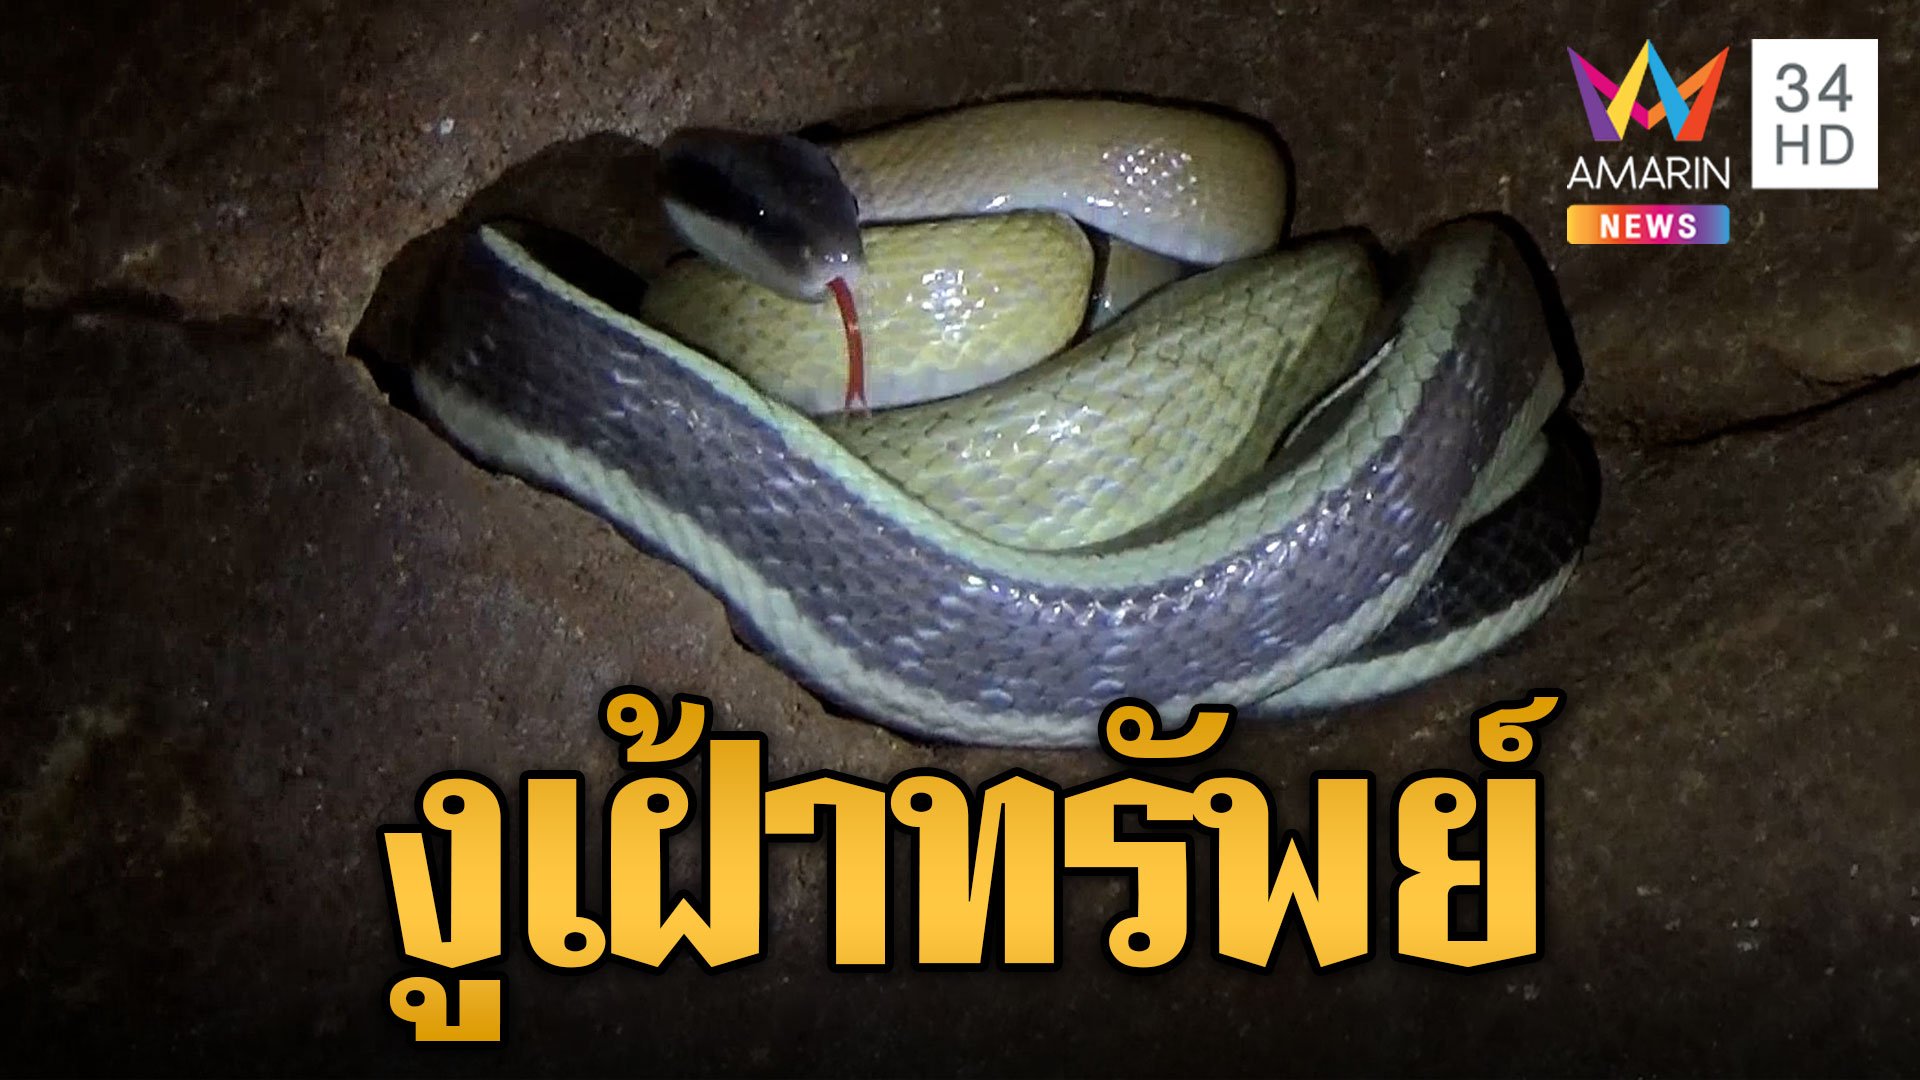 หายากในไทย งูกาบหมากหางนิล โผล่ถ้ำเฝ้าสมบัติ | ข่าวอรุณอมรินทร์ | 8 พ.ย. 66 | AMARIN TVHD34